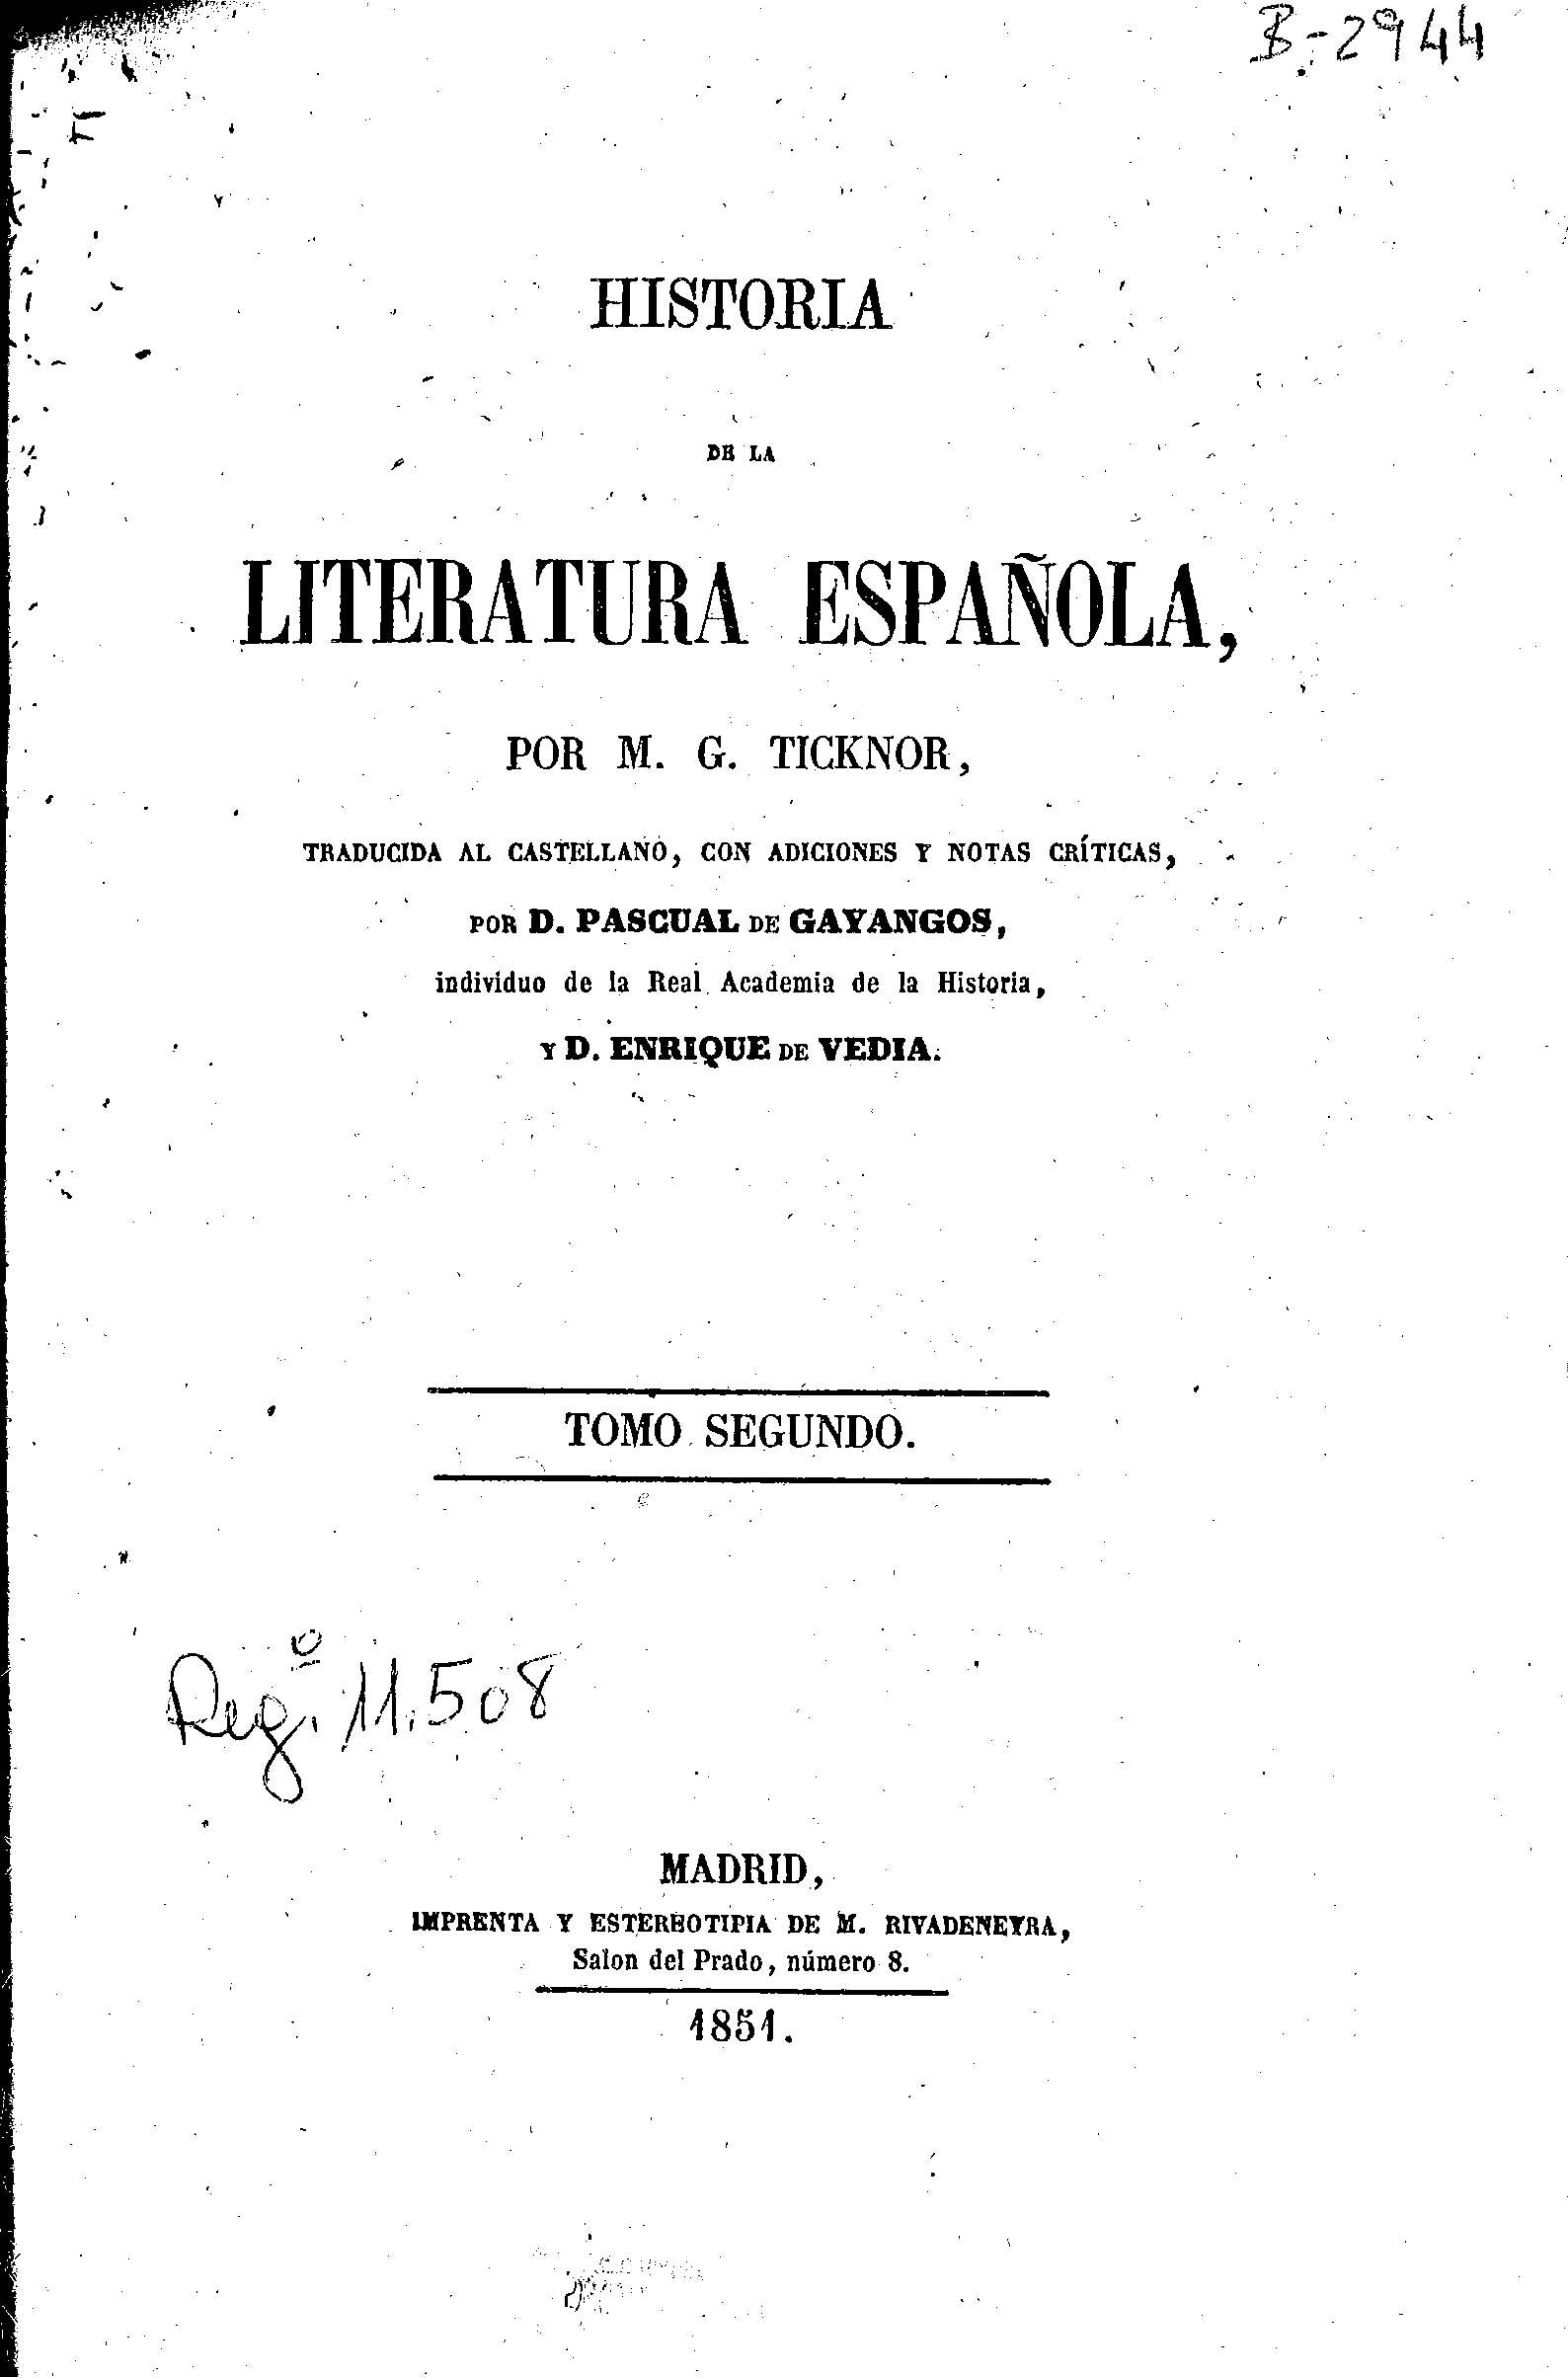 Historia de la Literatura Española, por M. G. Ticknor, traducida al castellano, con adiciones y notas críticas, por D. Pascual de Gayangos. Tomo Segundo